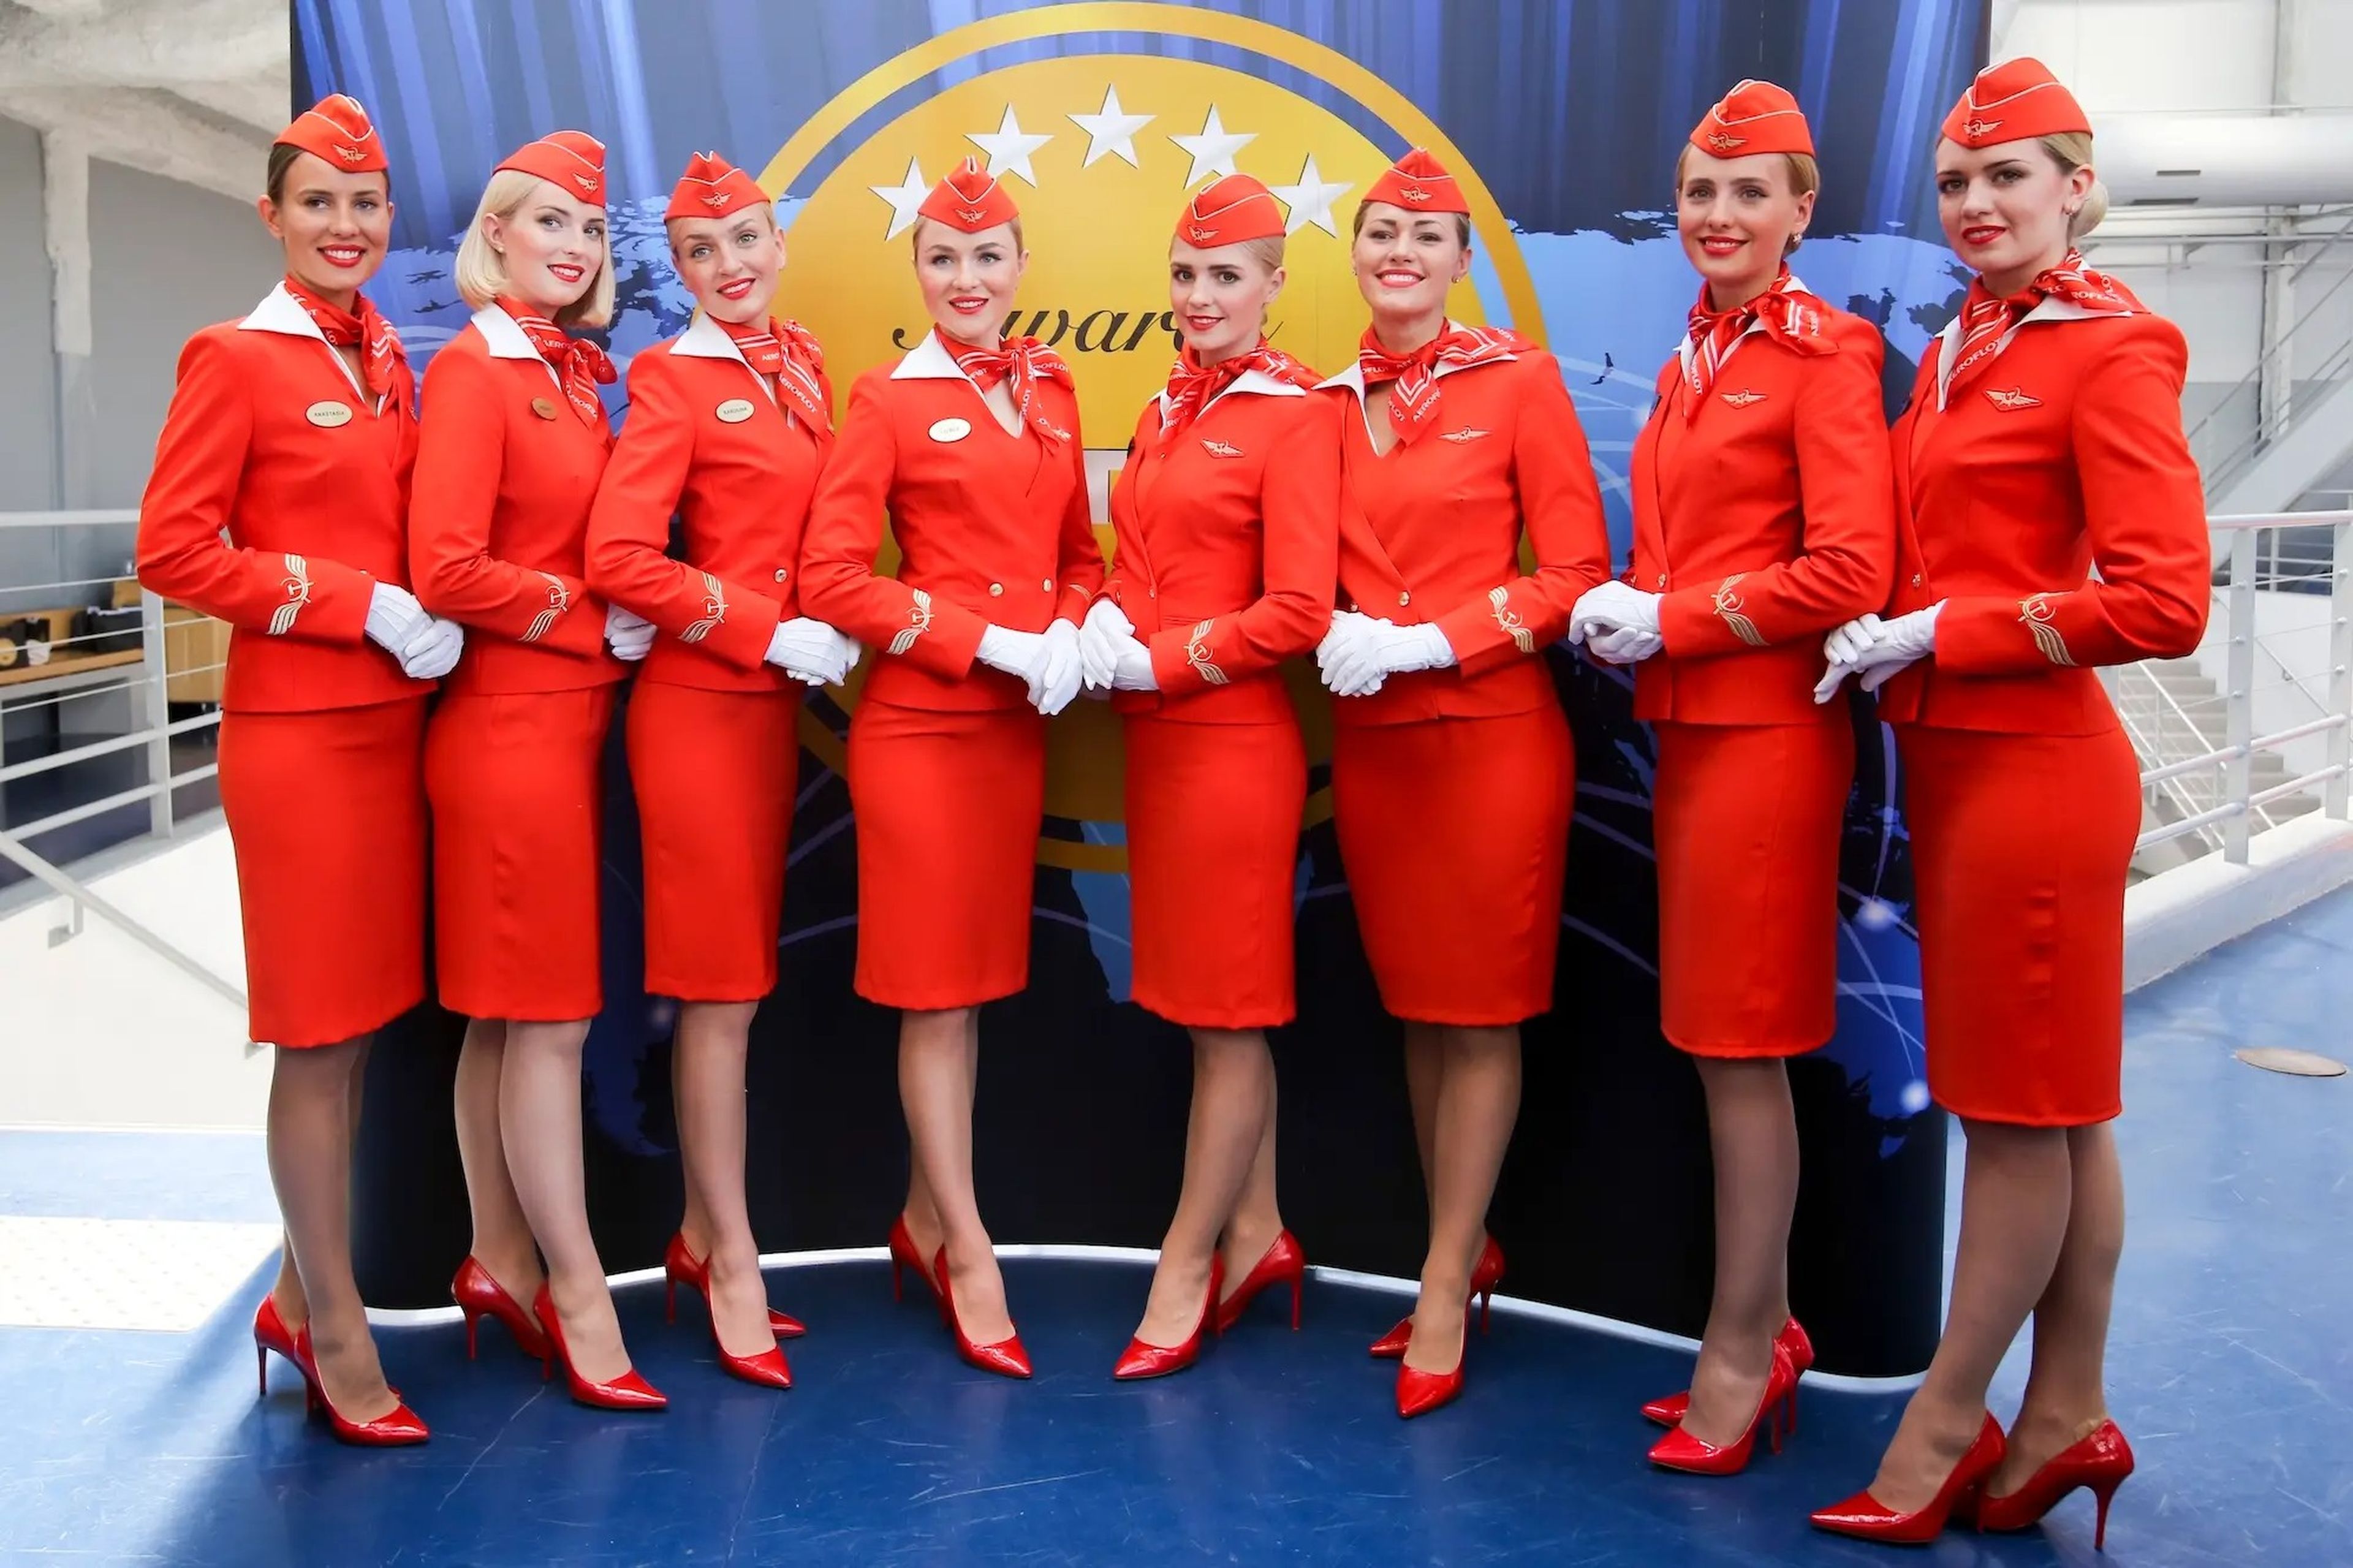 Los uniformes actuales de la aerolínea se asemejan a los populares diseños de los años 50.